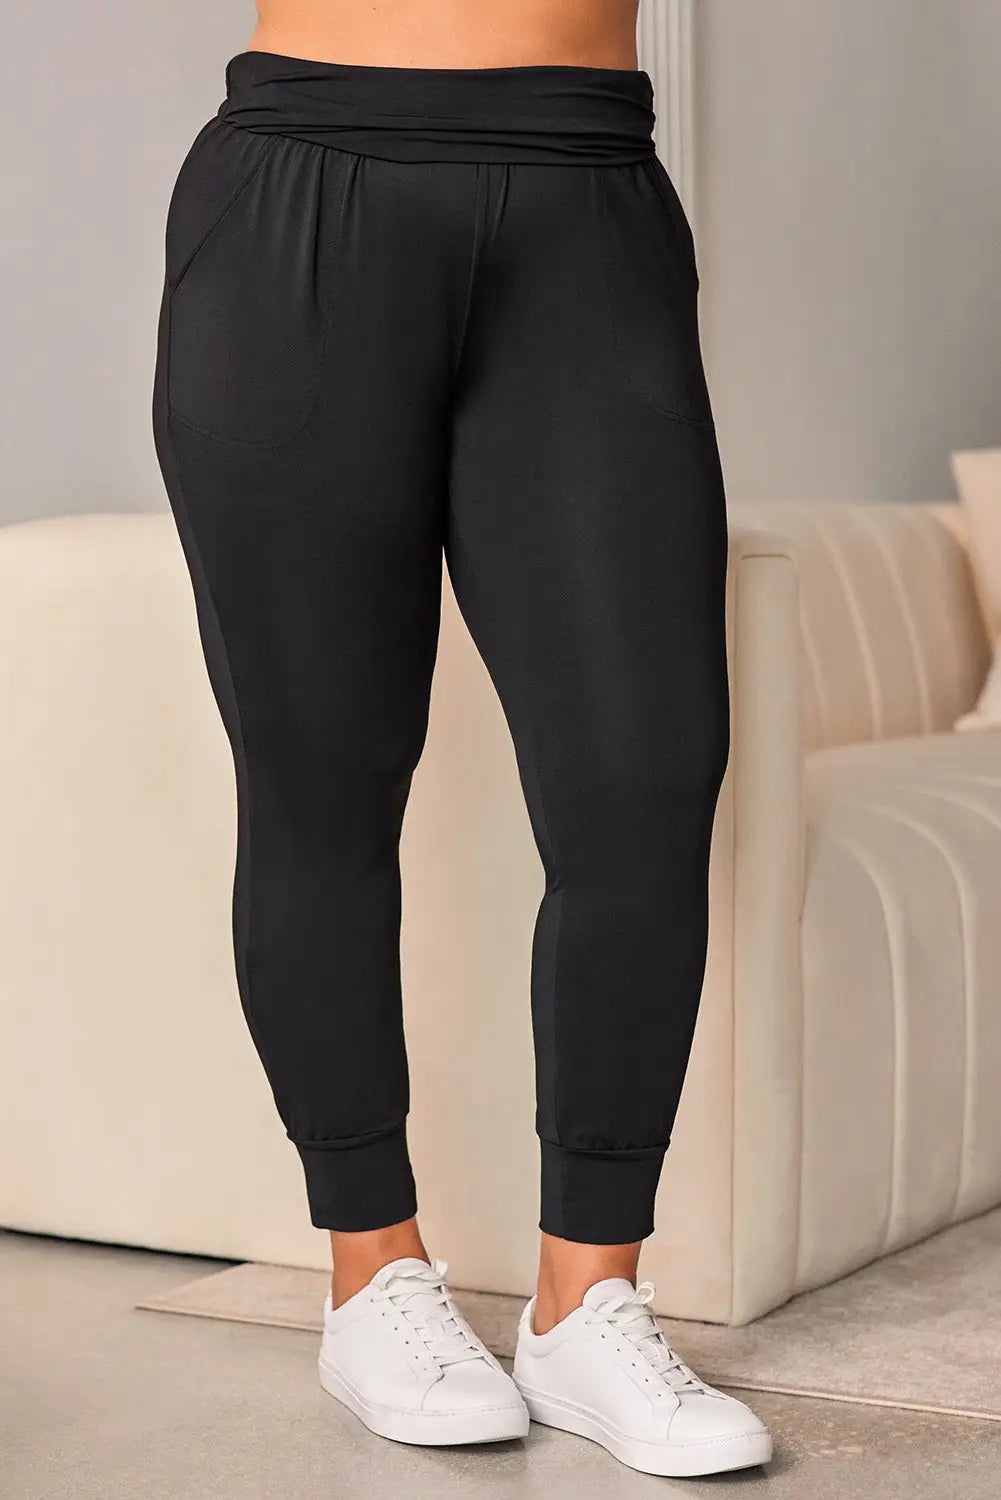 Black high waist pleated pocket leggings - 1x / 90% polyester + 10% elastane